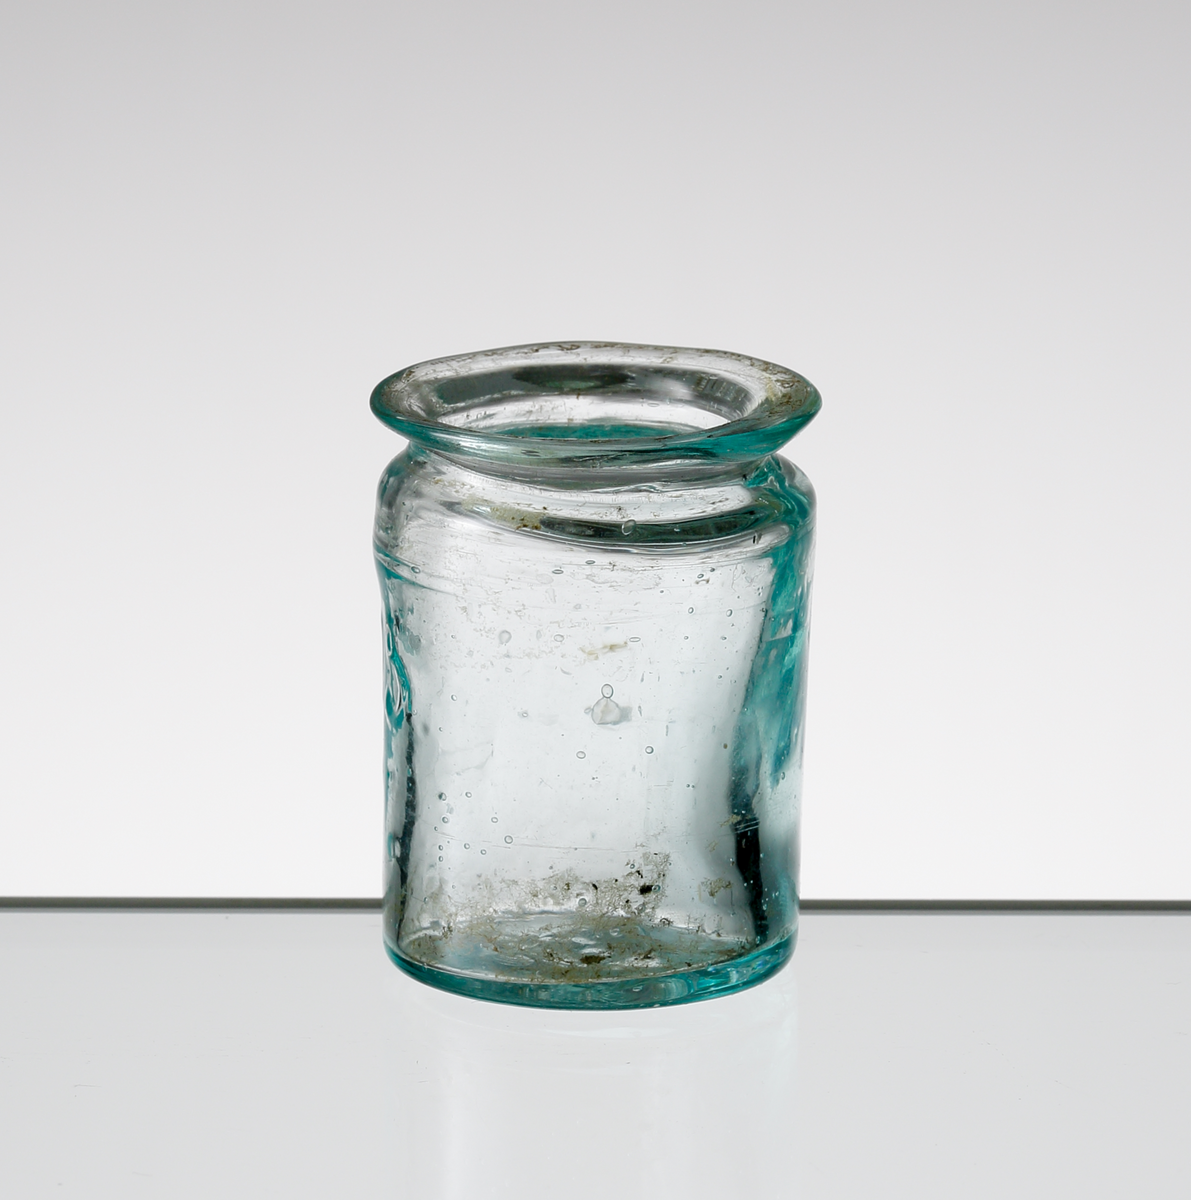 Apoteksburk i blågröntonat glas från Hofmantorps glasbruk. 
Cylindrisk med utvikt mynning. Puntelmärke.
Siffran "15" i upphöjd relief på livet.